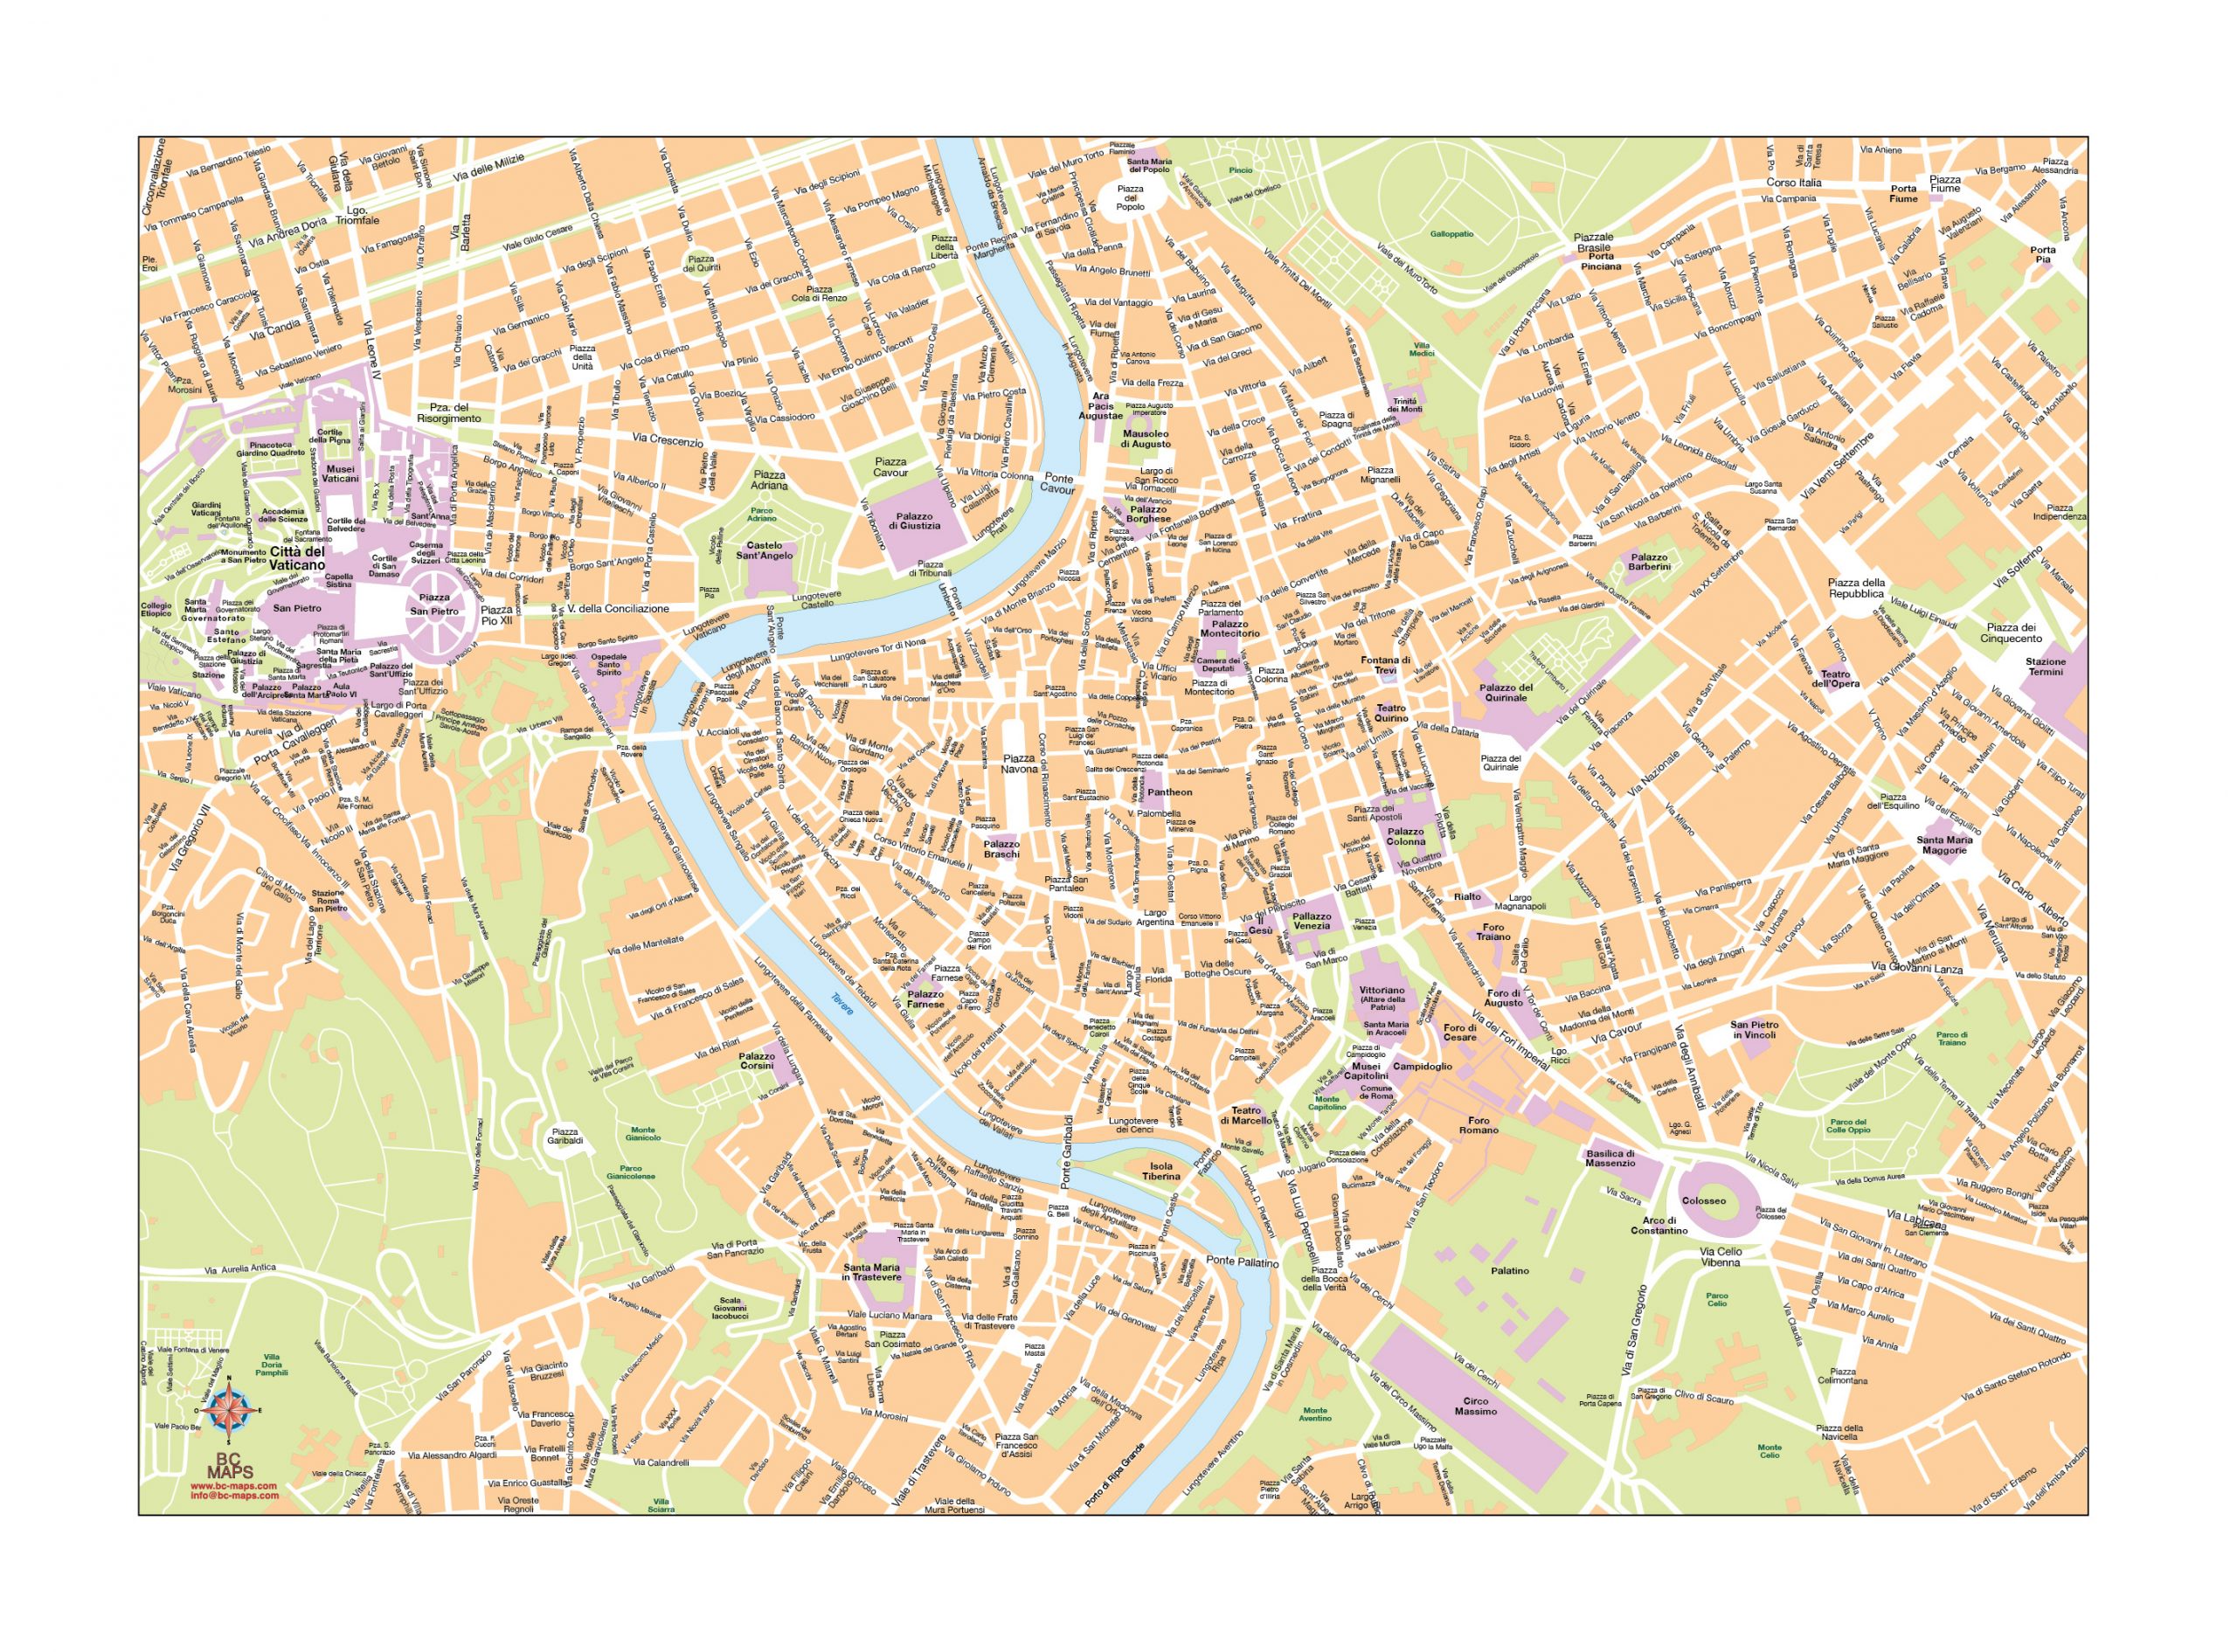 Rome plan de ville fond de carte vectoriel illustrator eps A3